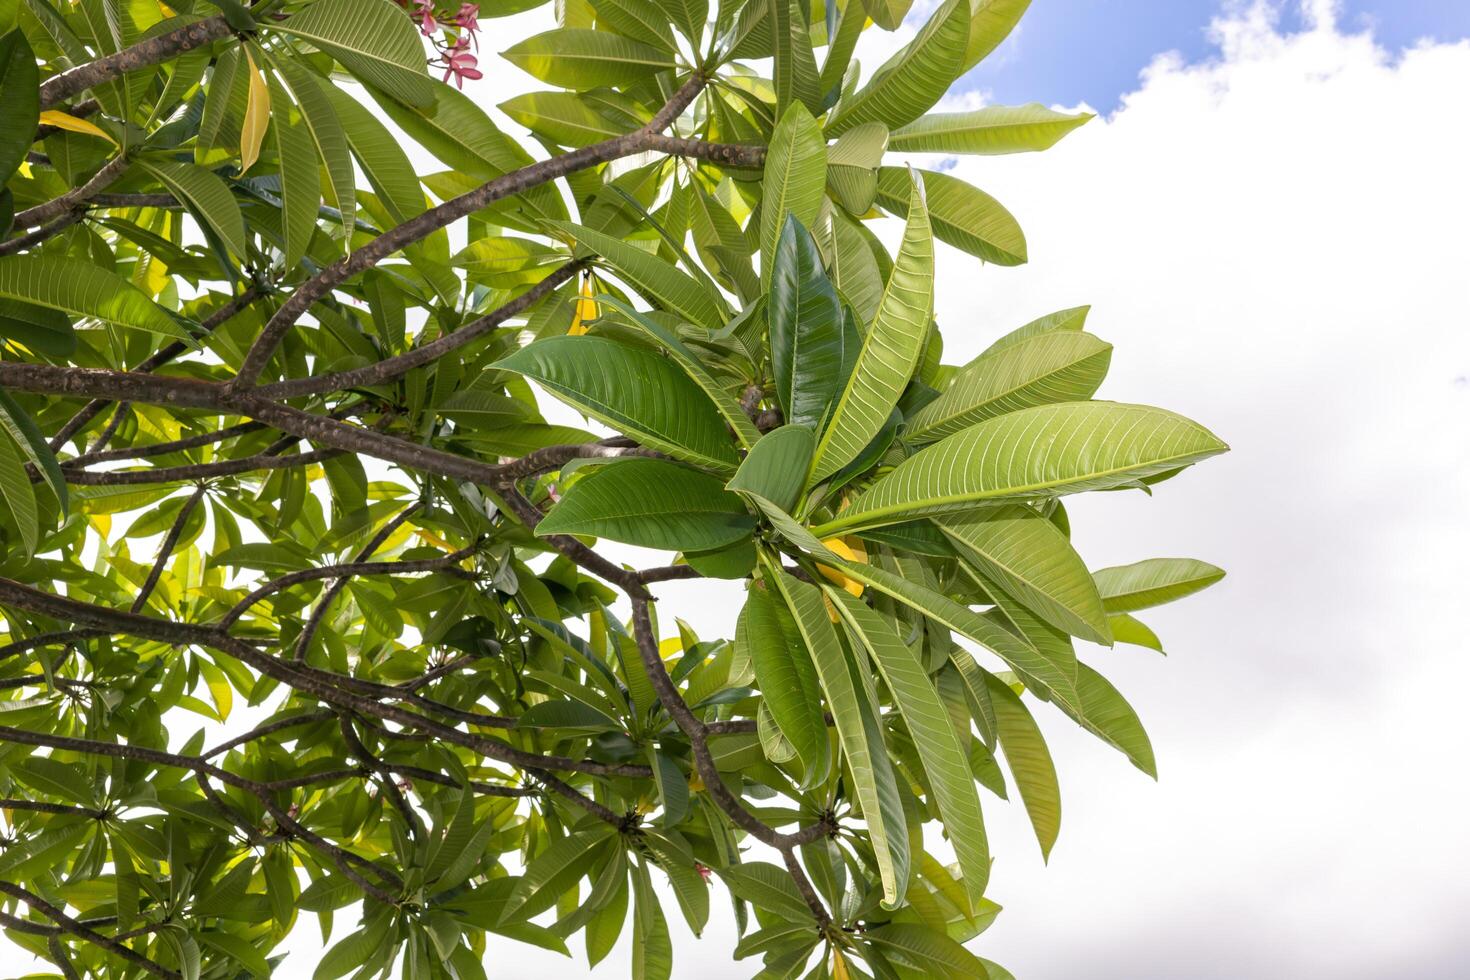 frangipani de flor branca ou plumeria em folha verde com céu azul claro no fundo. foto